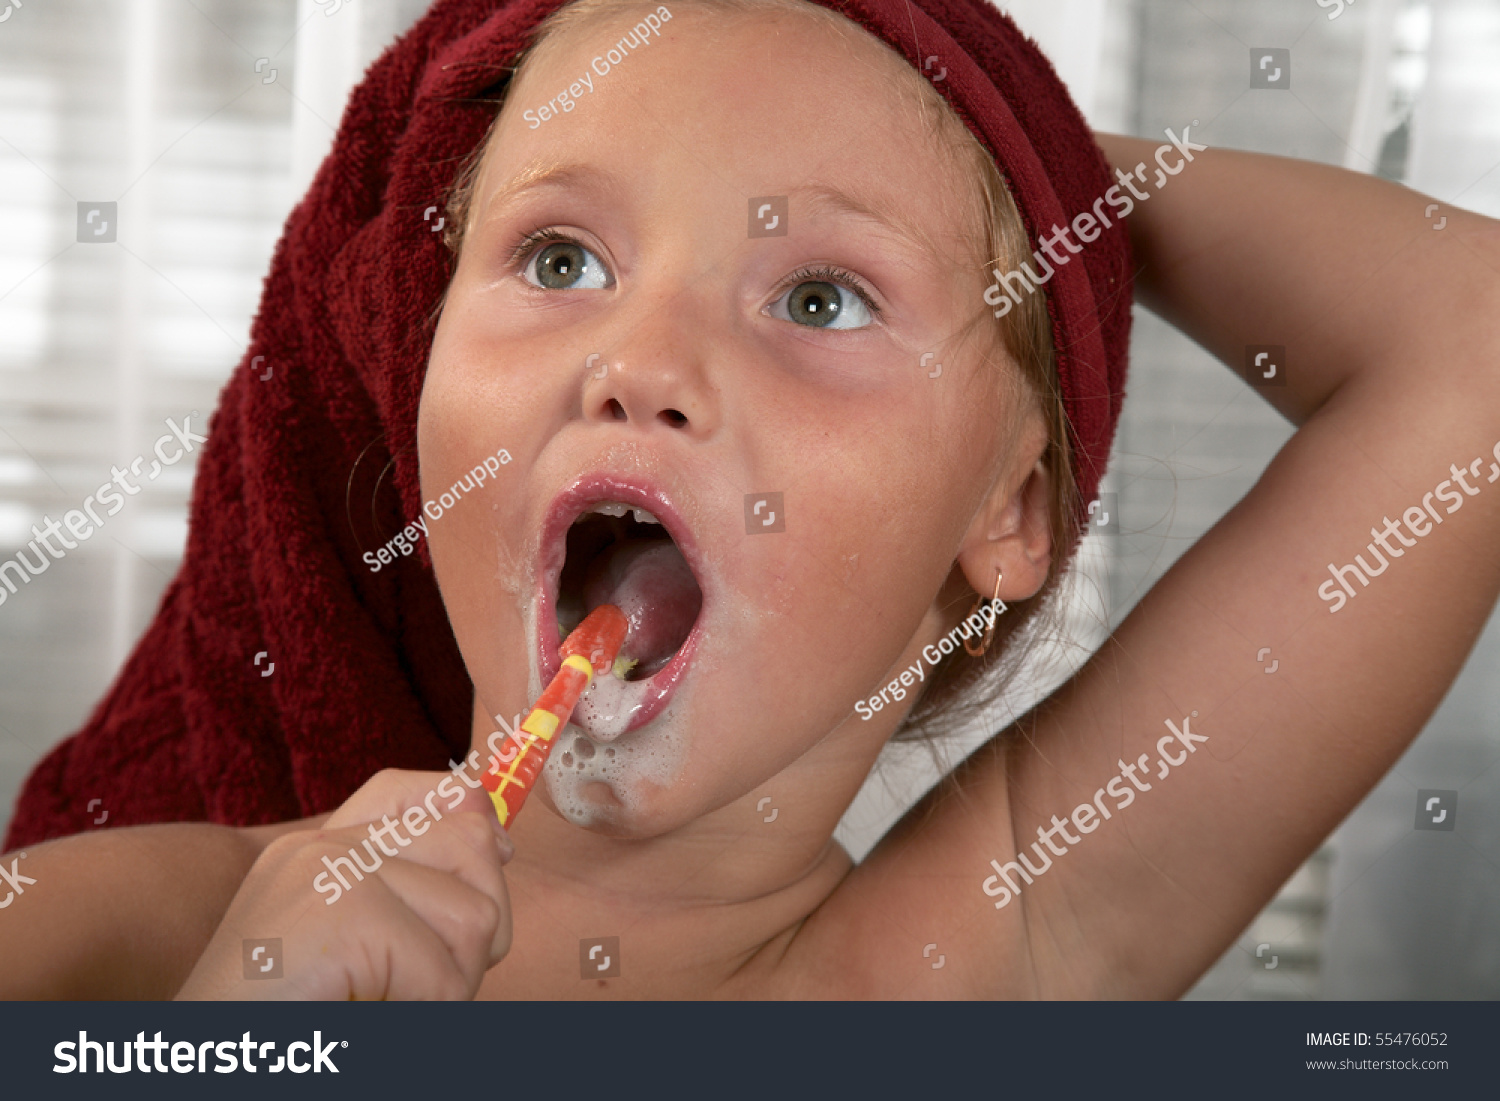 Девочка с презиком в зубах